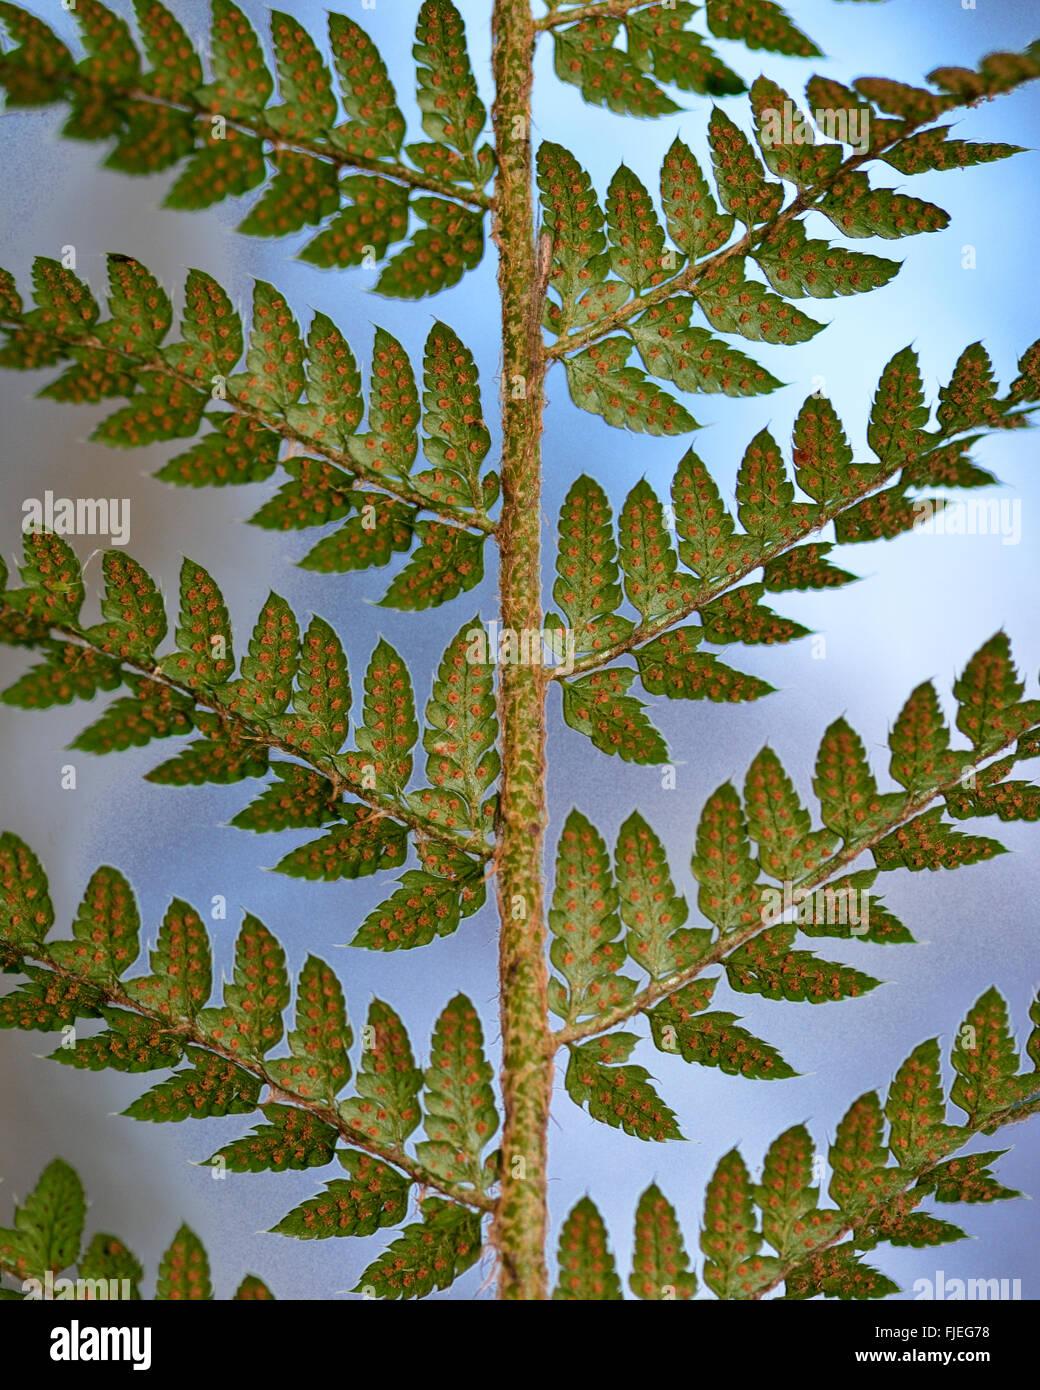 Soft shield fern (Polystichum setiferum) dessous de la fronde. Sores de reproduction et les sporanges sont visibles sur cette fougère Banque D'Images